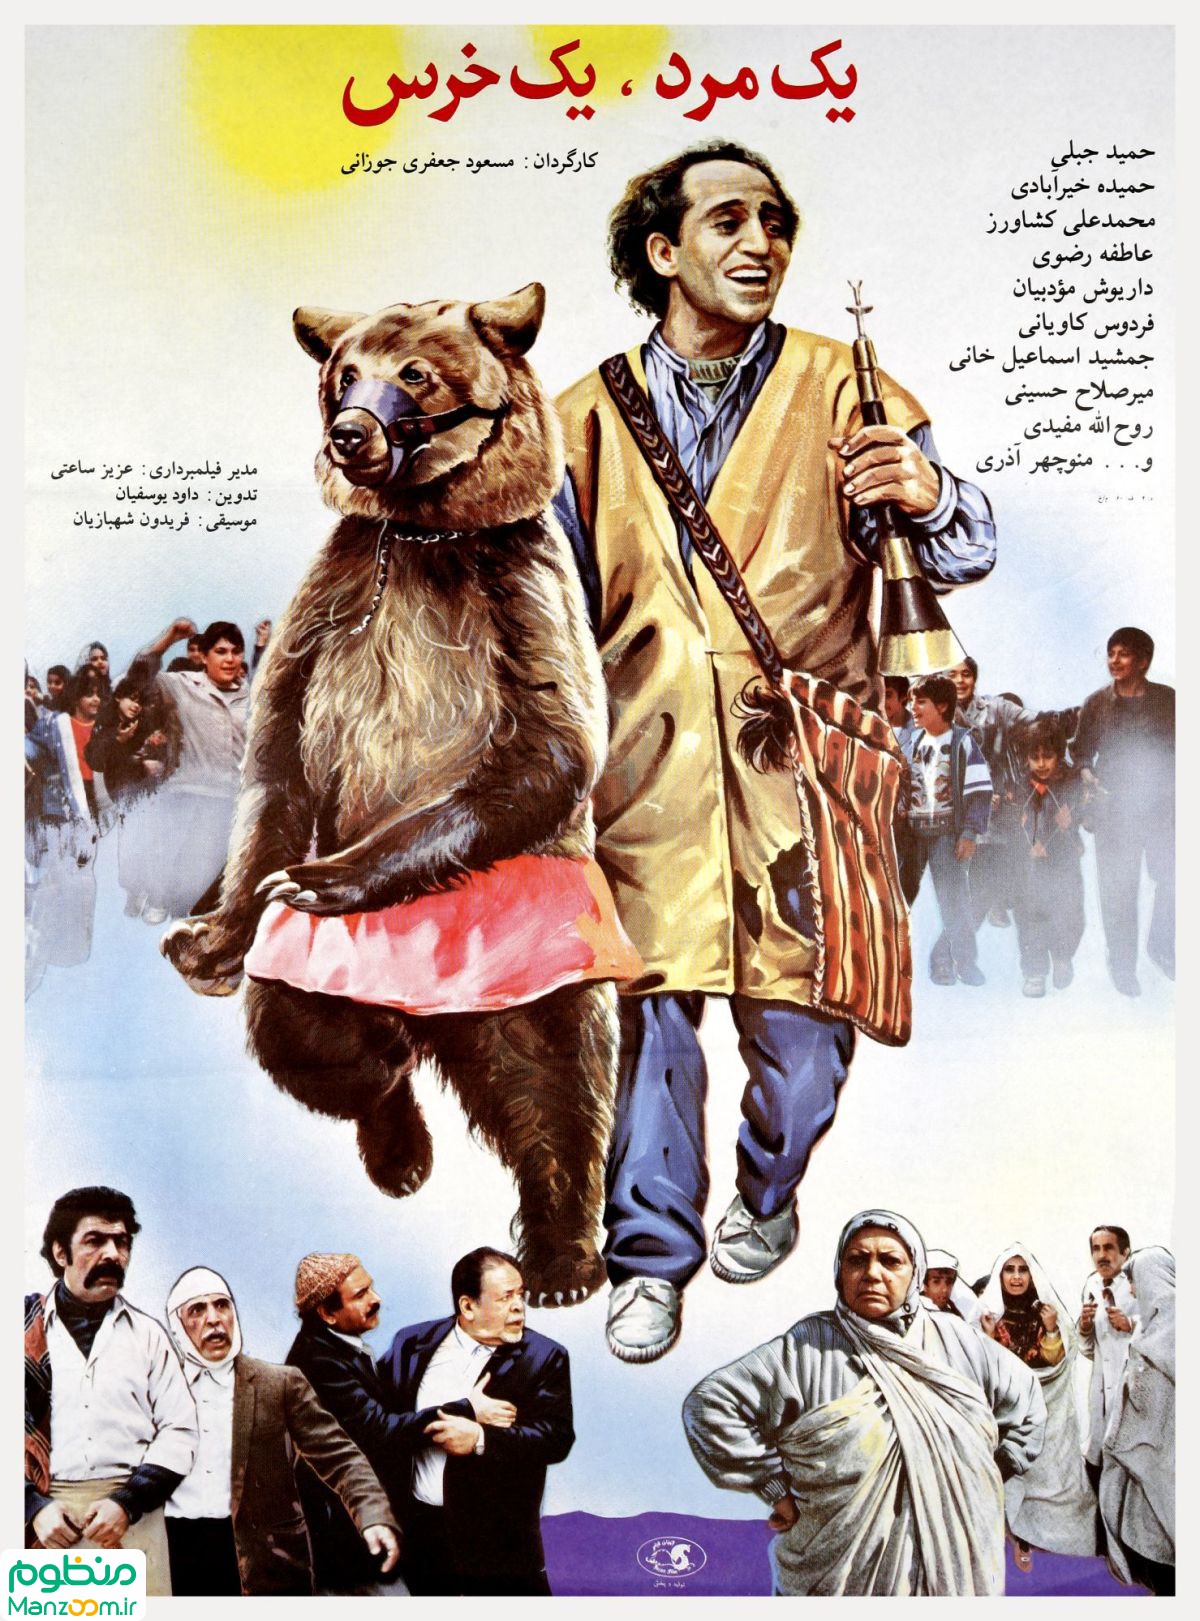  فیلم سینمایی یک مرد یک خرس به کارگردانی مسعود جعفری‌جوزانی